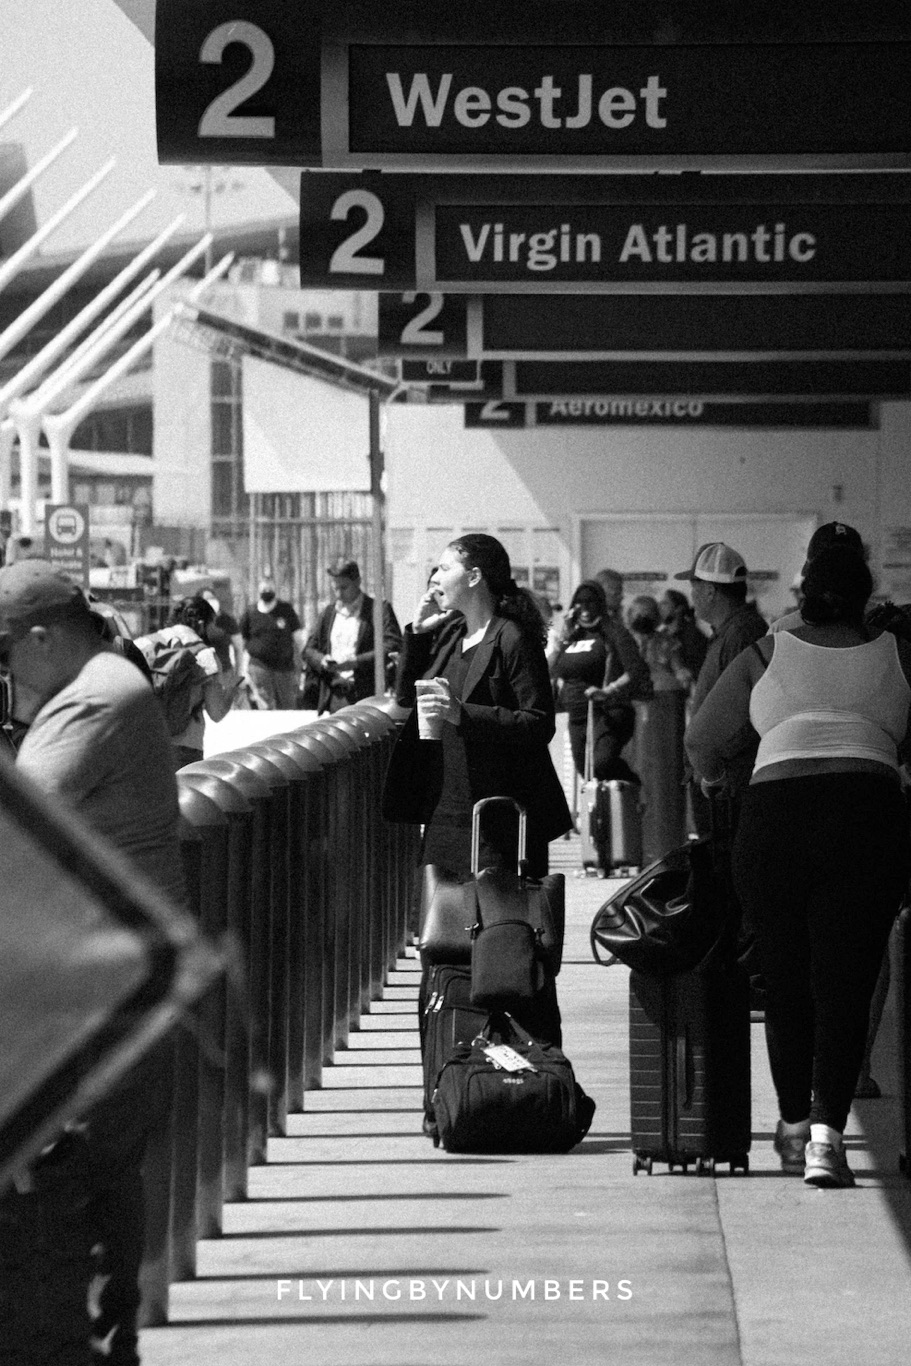 Flight attendant waits at an airport after a long flight